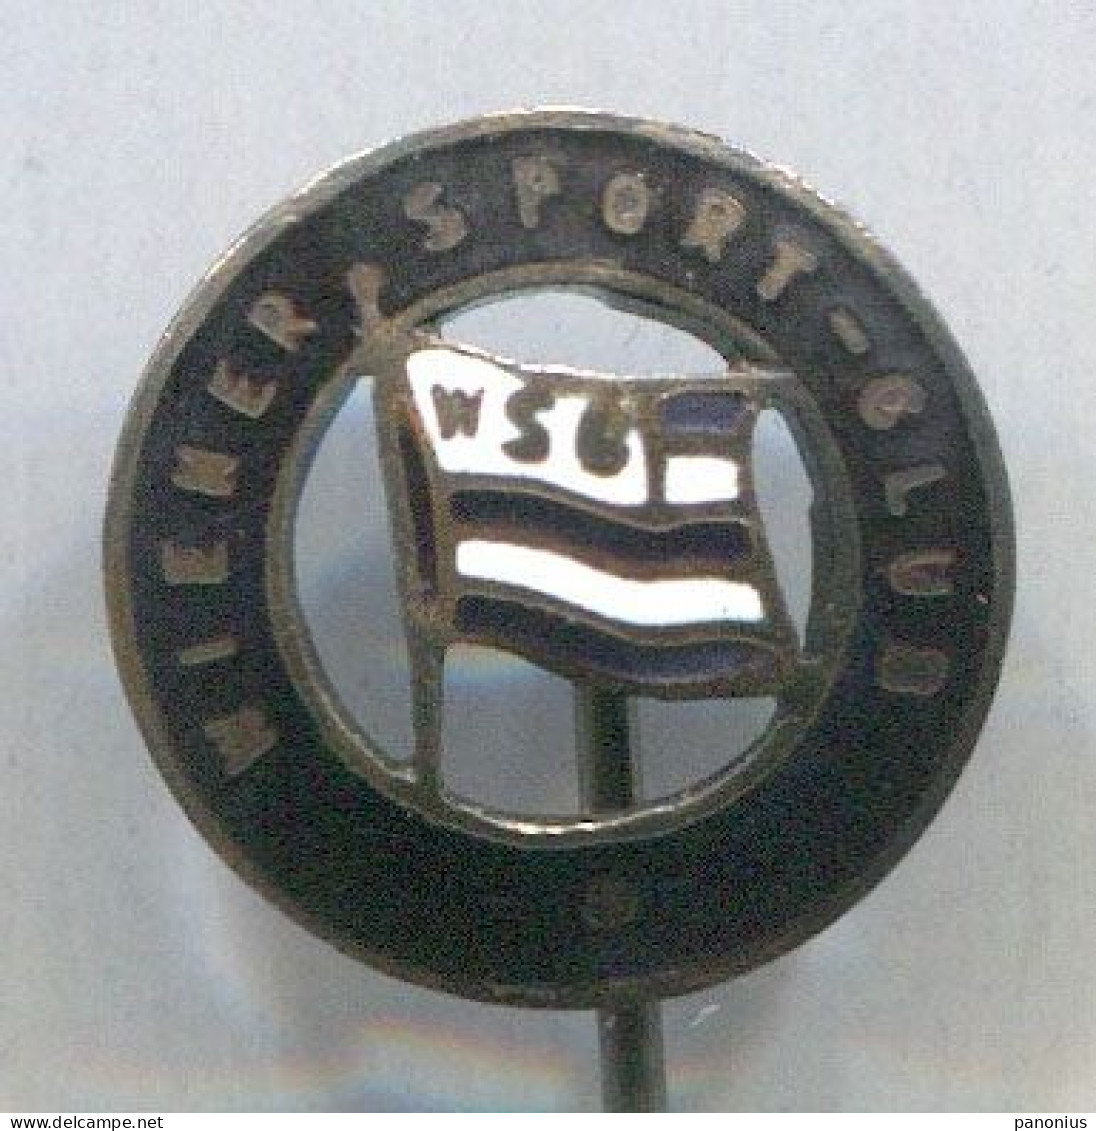 FOOTBALL / SOCCER / FUTBOL / CALCIO - WSC Wiener Sport Club  Austria, Enamel  Old Pin  Badge Abzeichen, Before WW2 - Football